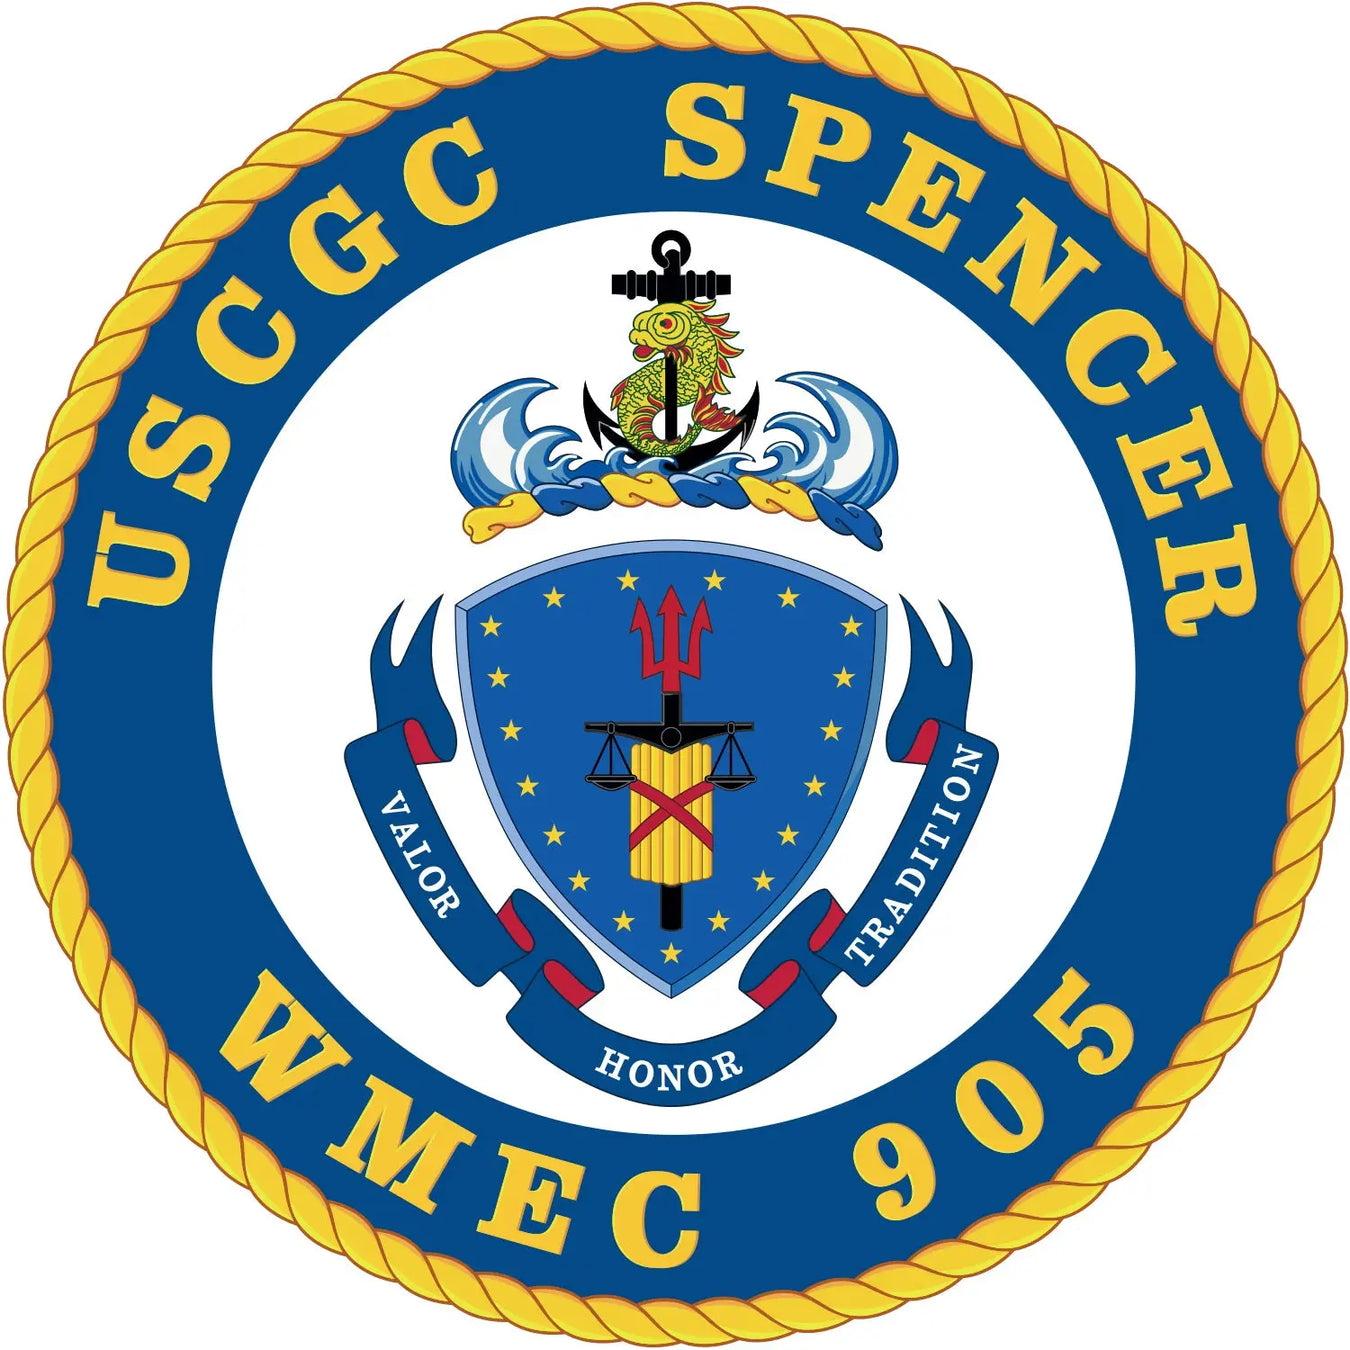 USCGC Spencer (WMEC-905)